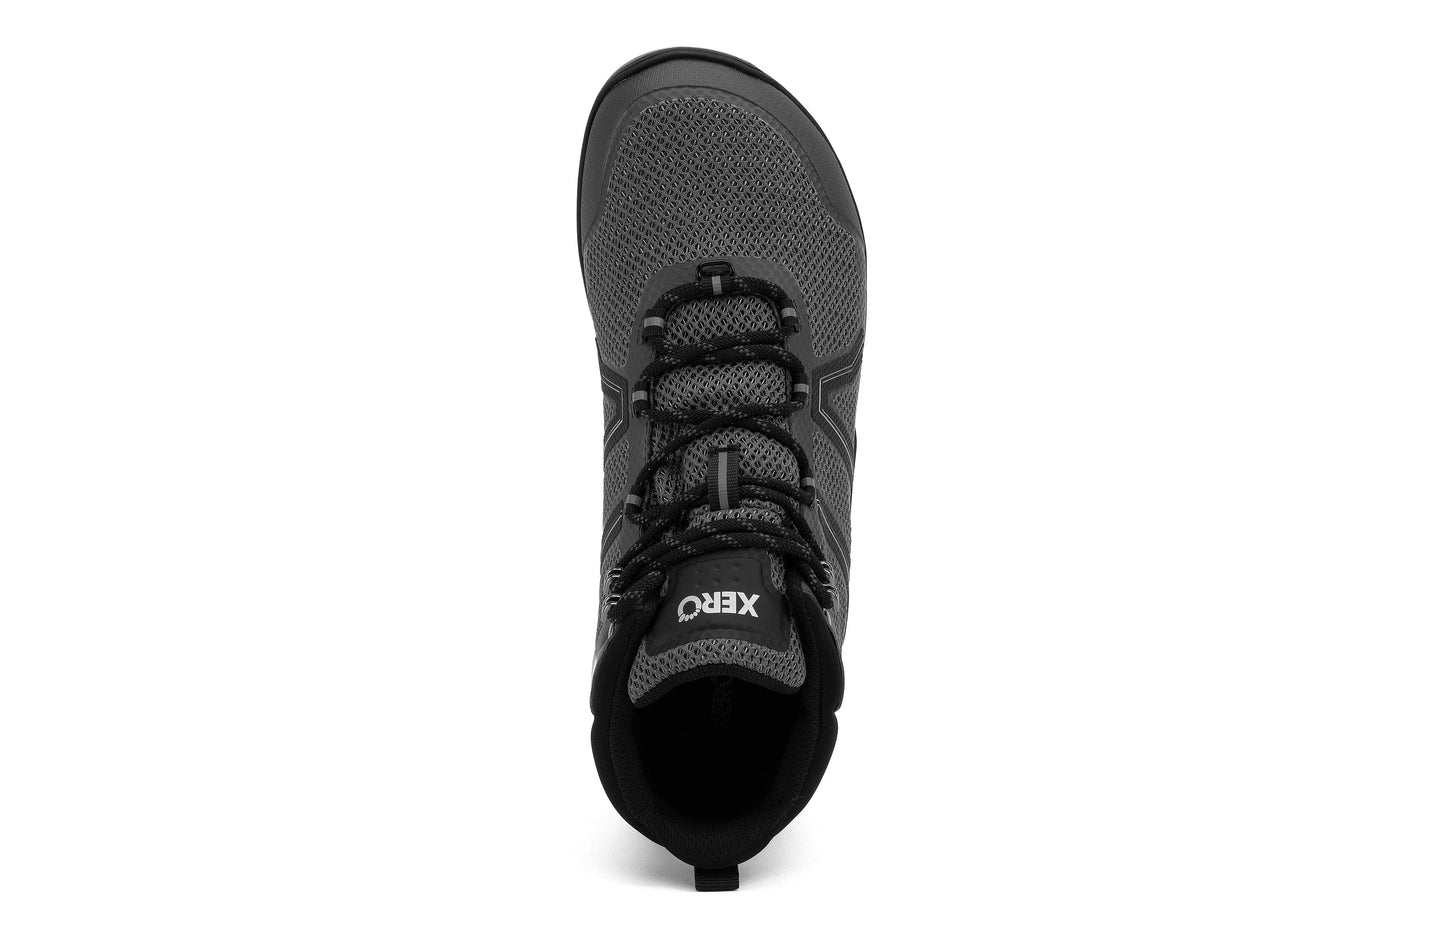 Xero Shoes Xcursion Fusion barfods støvler til mænd i farven asphalt, top